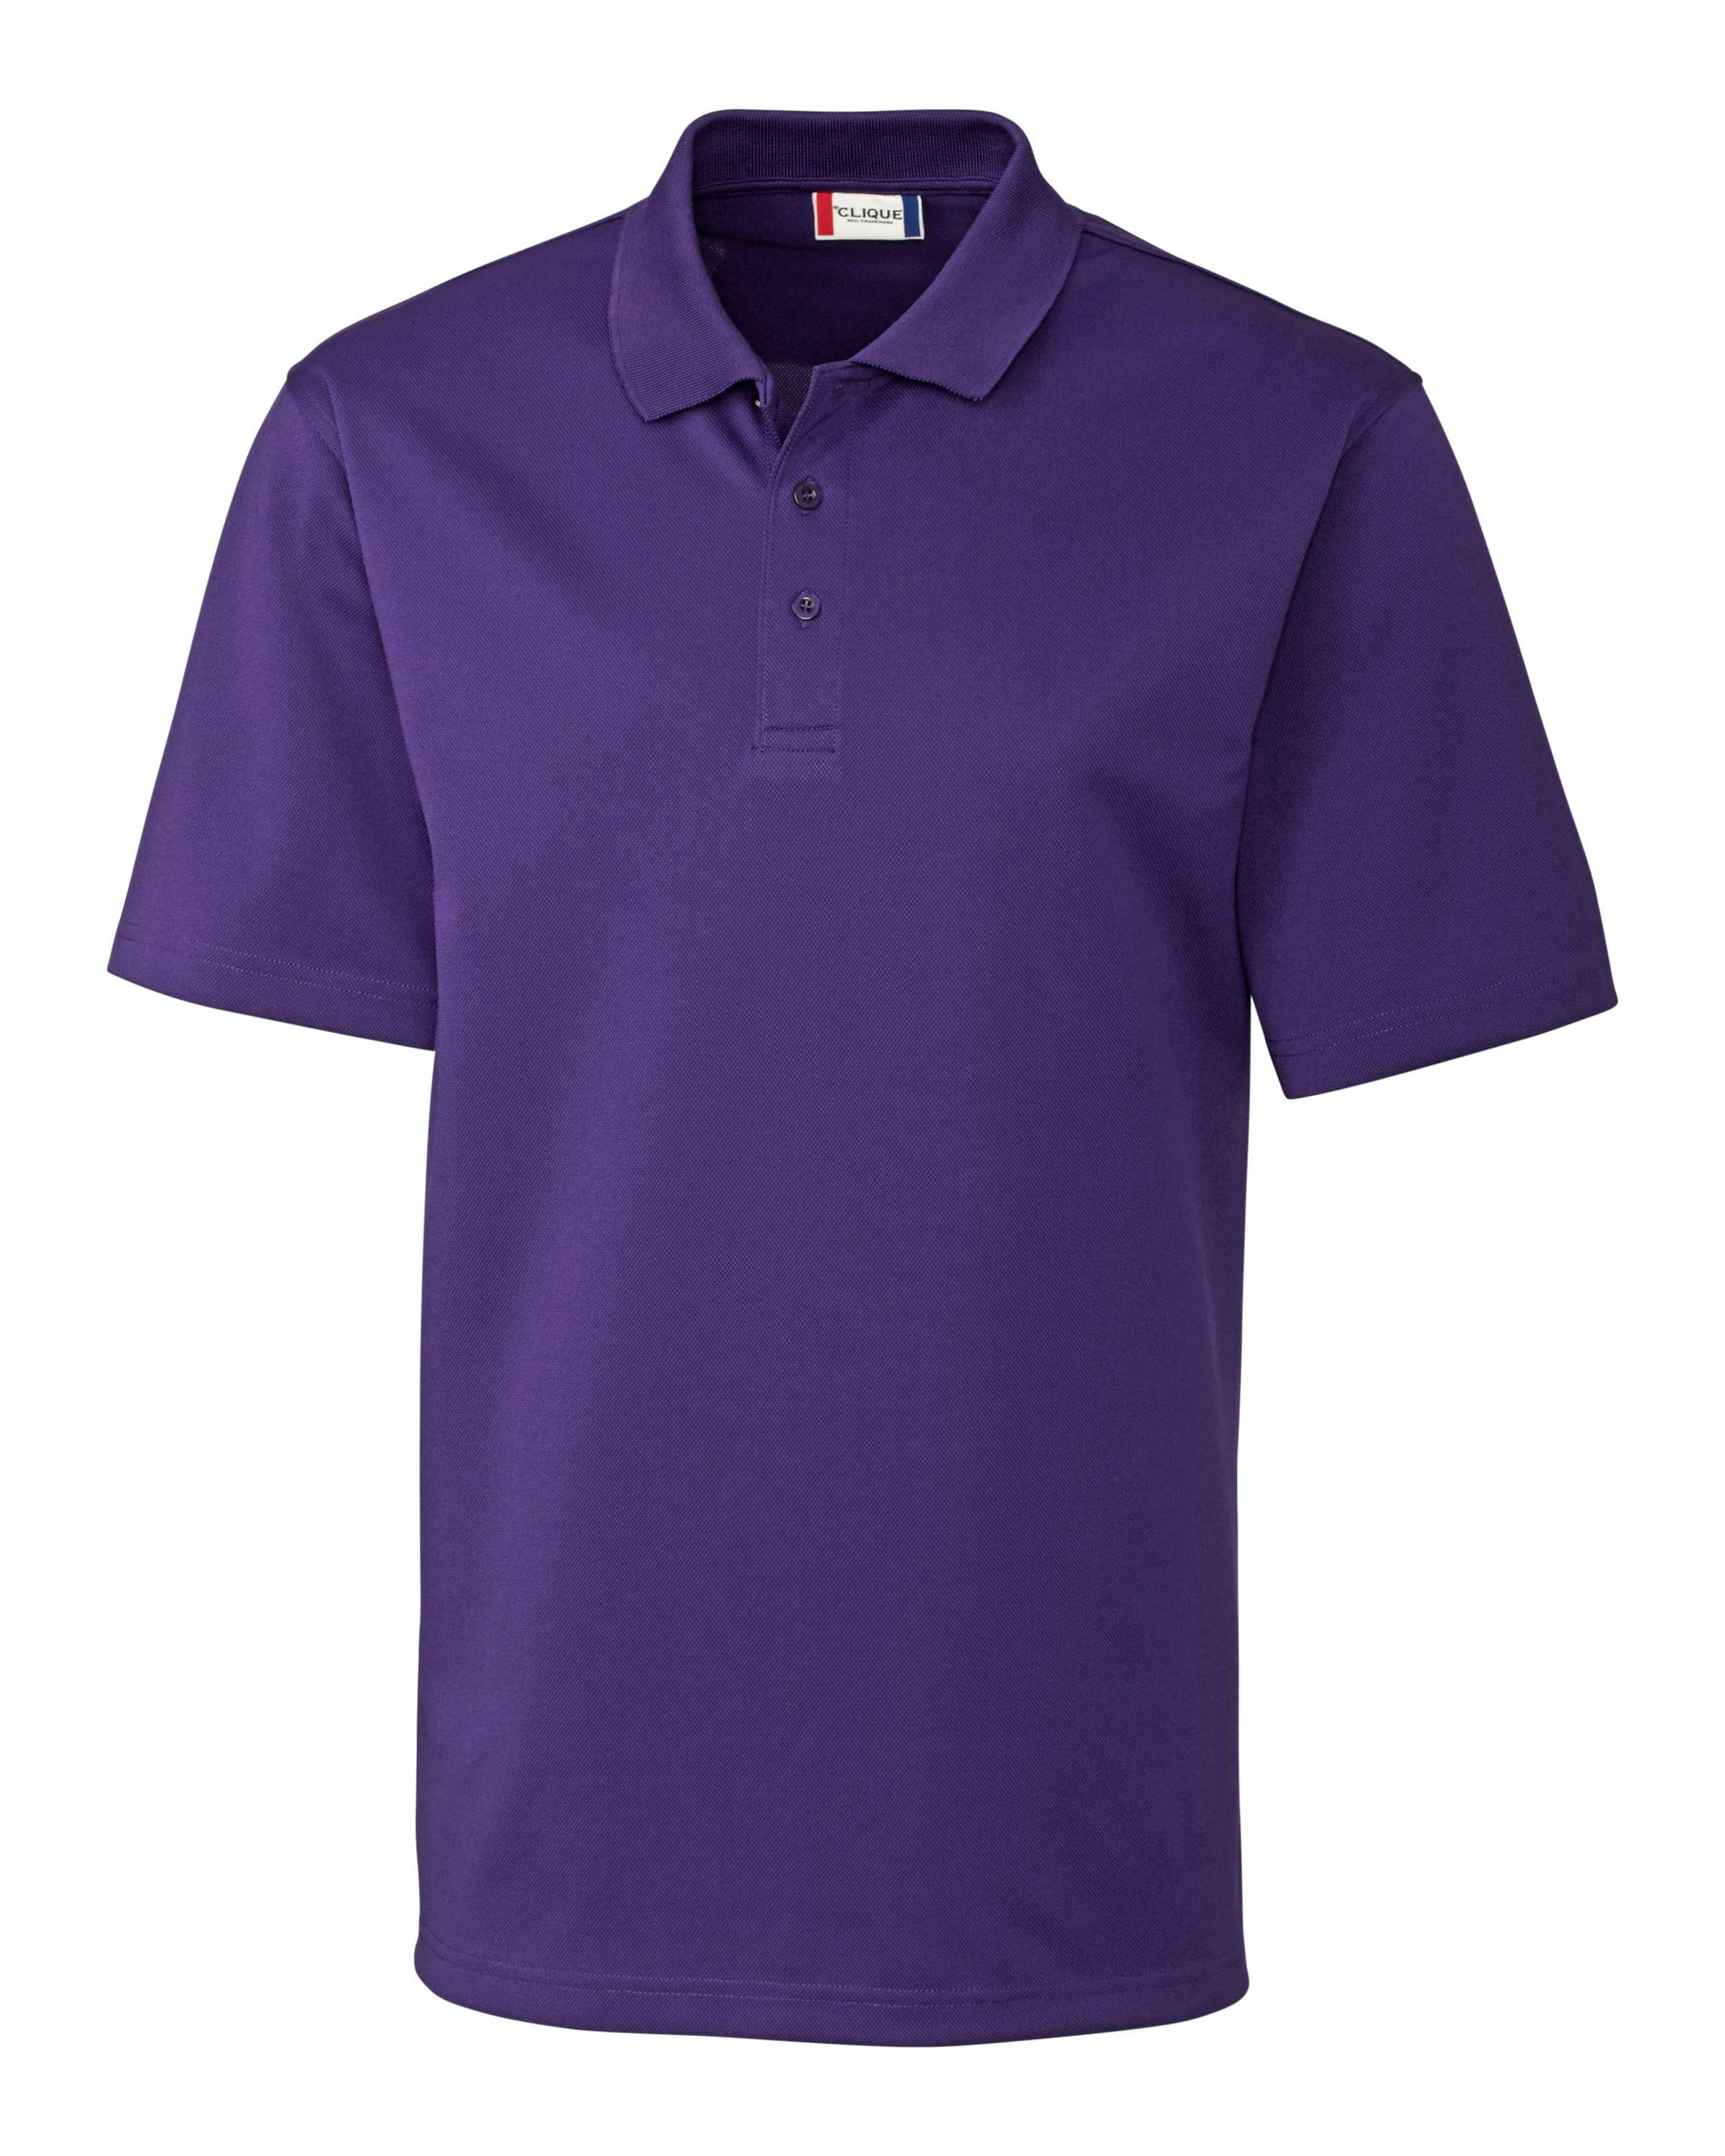 Clique Men's Malmo Pique Polo Shirt - Walmart.com